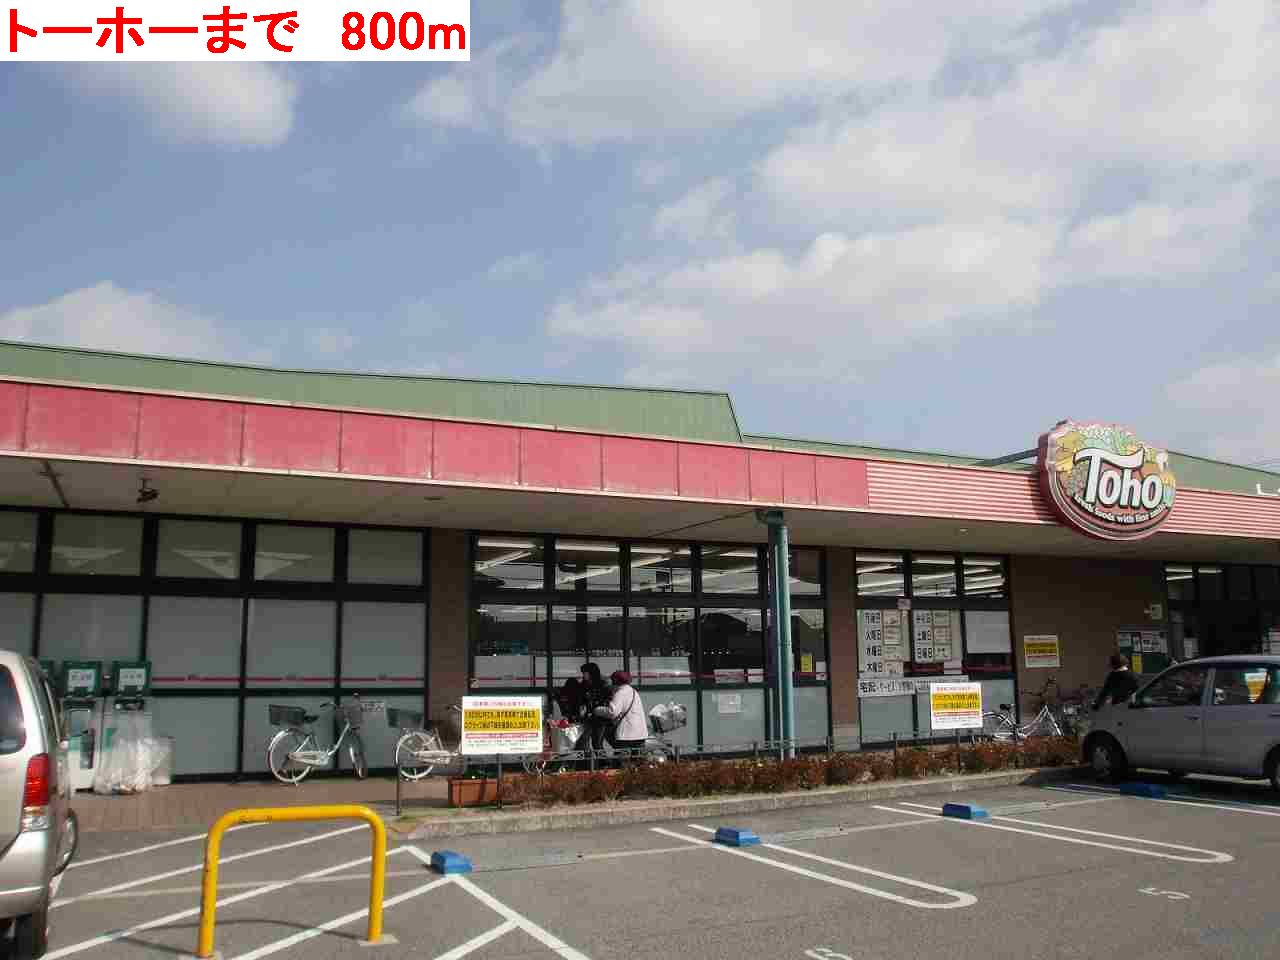 Supermarket. 800m to Toho (super)